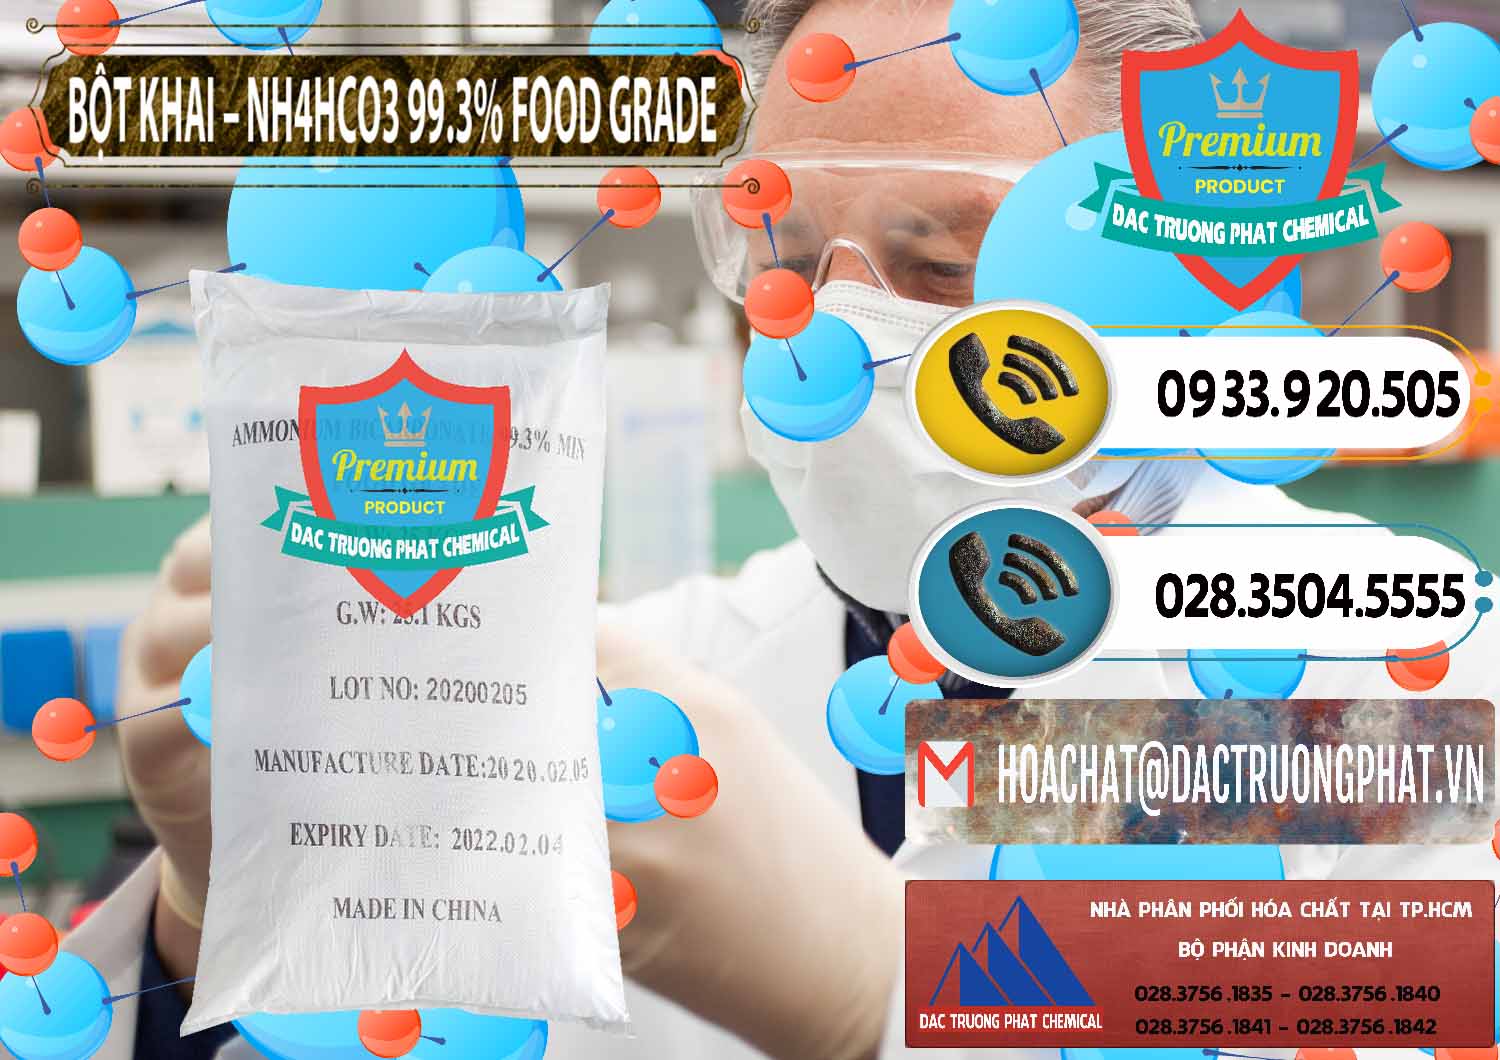 Chuyên nhập khẩu - bán Ammonium Bicarbonate – Bột Khai NH4HCO3 Food Grade Trung Quốc China - 0019 - Nơi chuyên kinh doanh _ cung cấp hóa chất tại TP.HCM - hoachatdetnhuom.vn